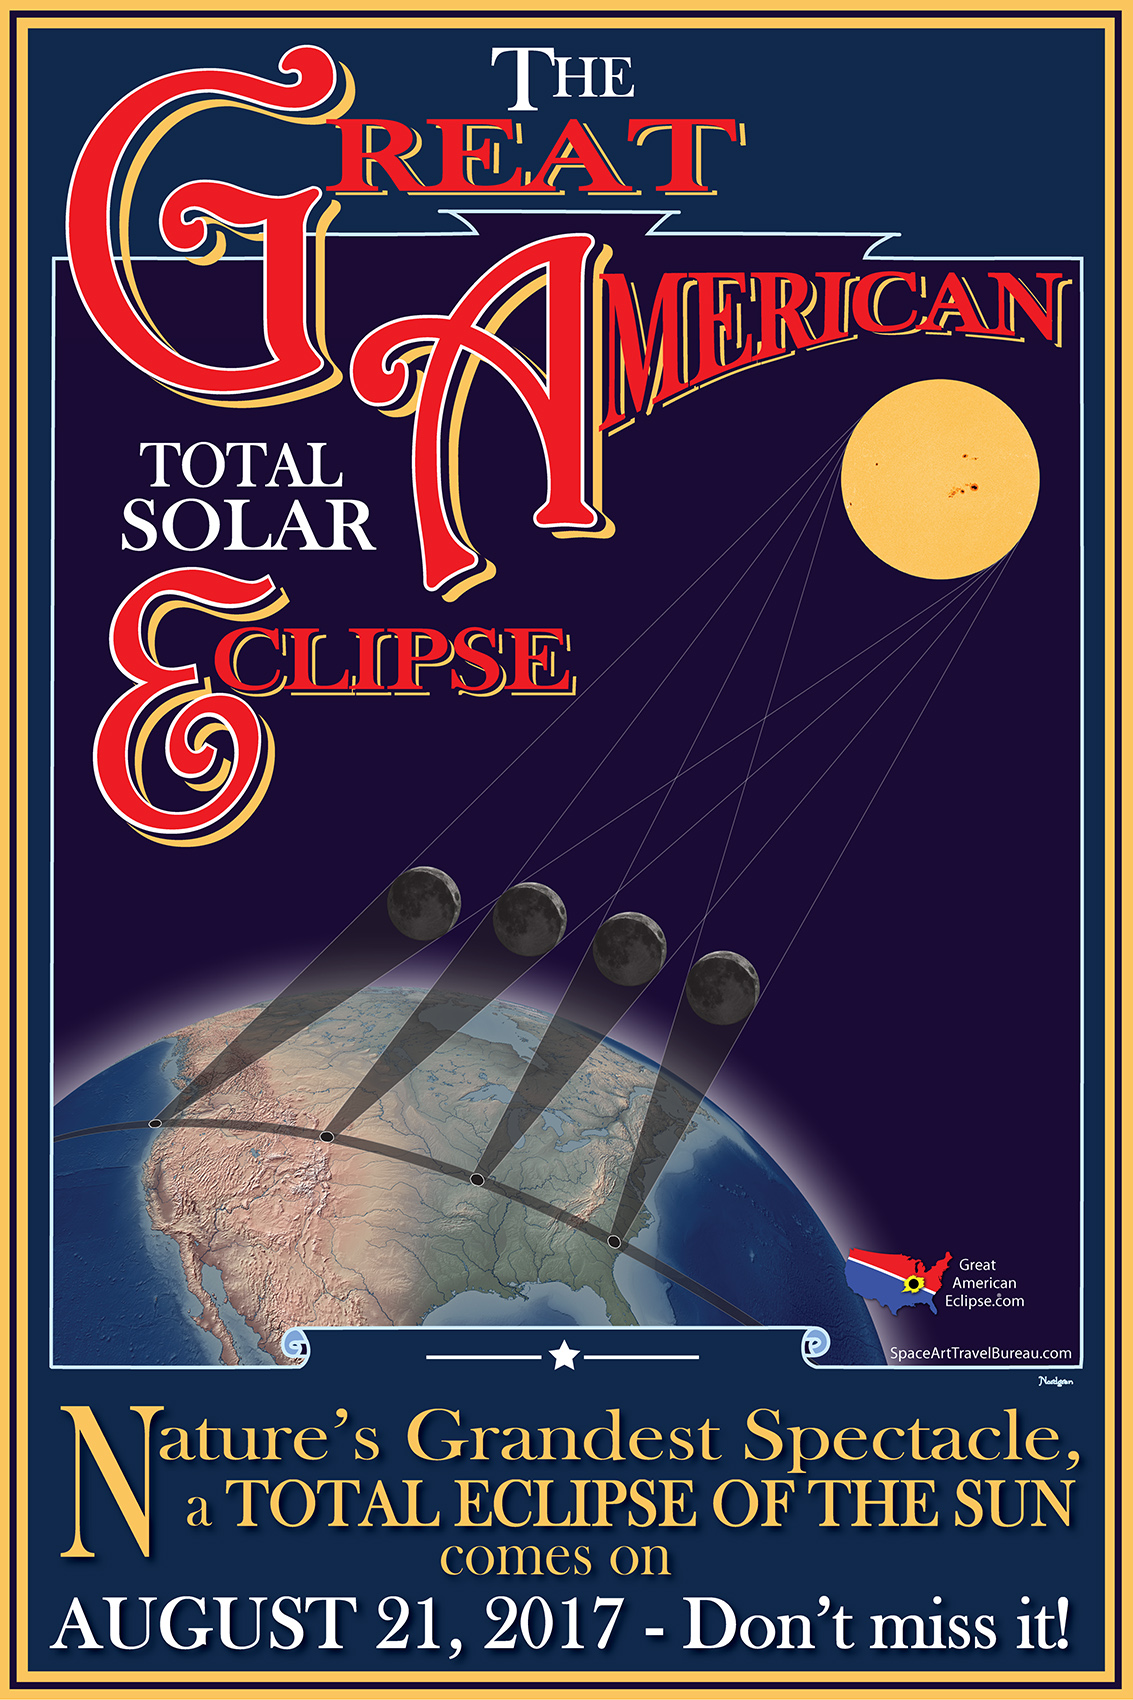 Credit: Tyler Nordgren (Space Art Travel Bureau) / Michael Zeiler (GreatAmericanEclipse.com)